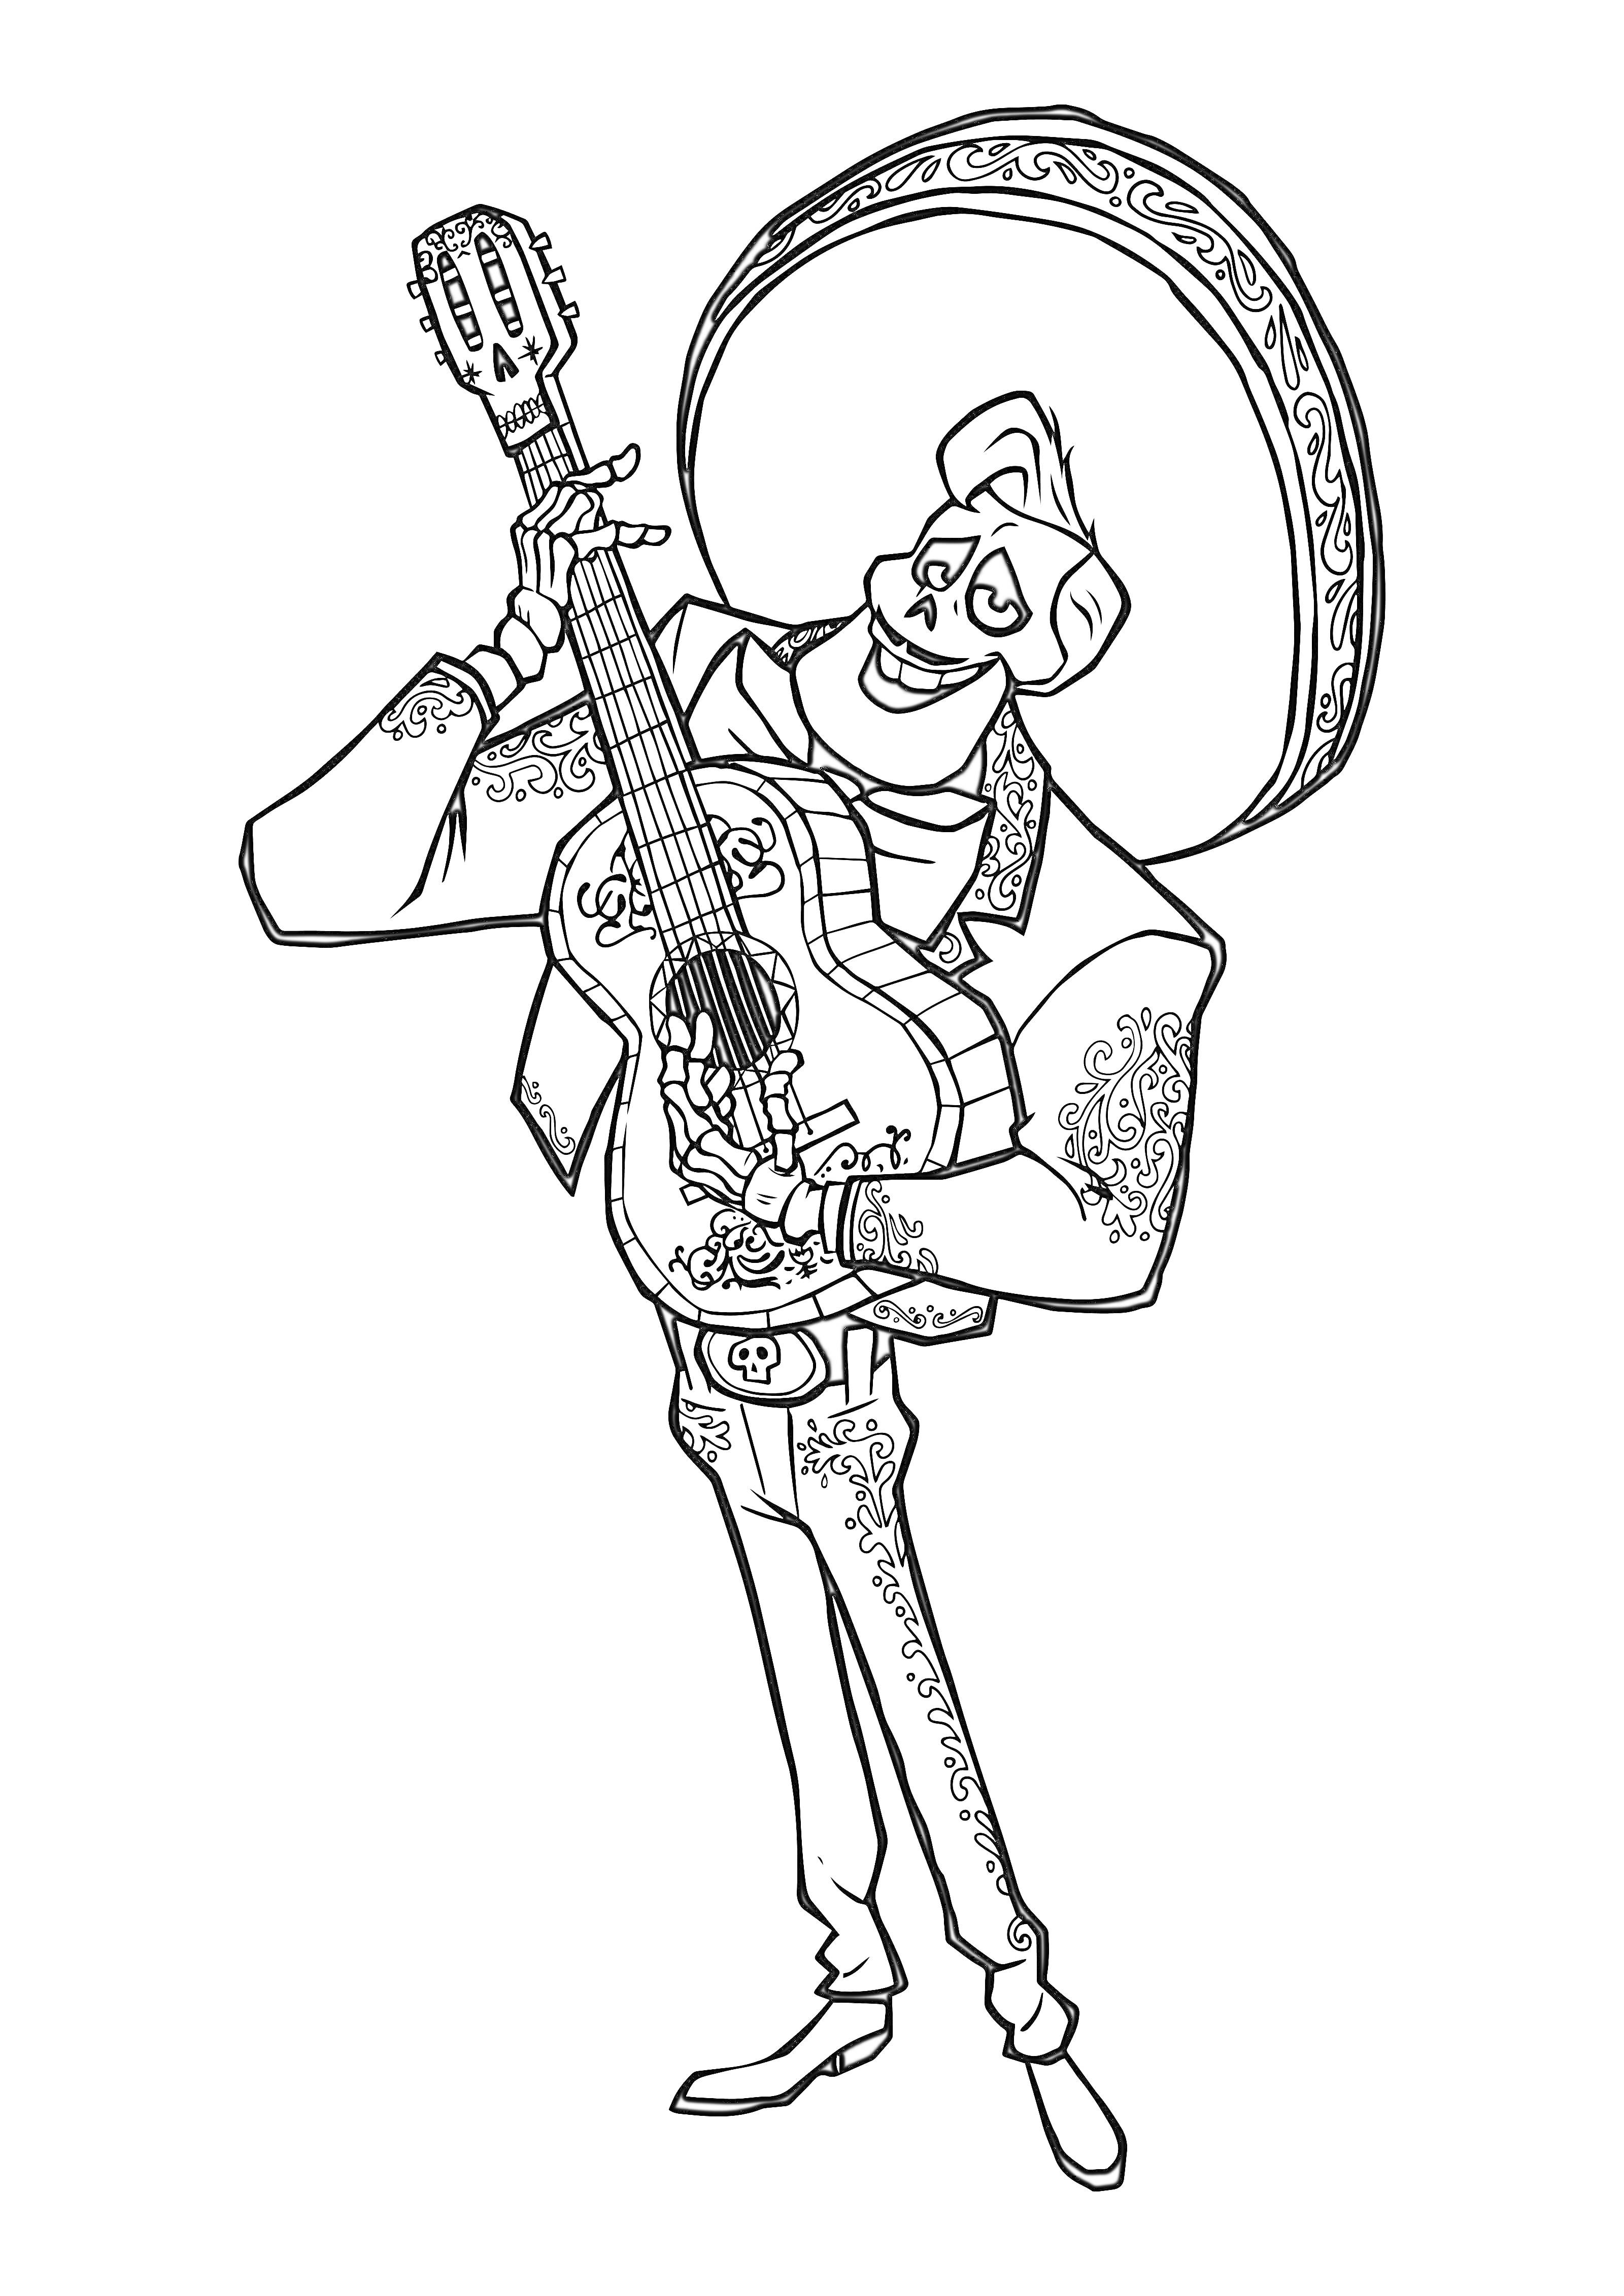 Скелет в сомбреро играет на гитаре